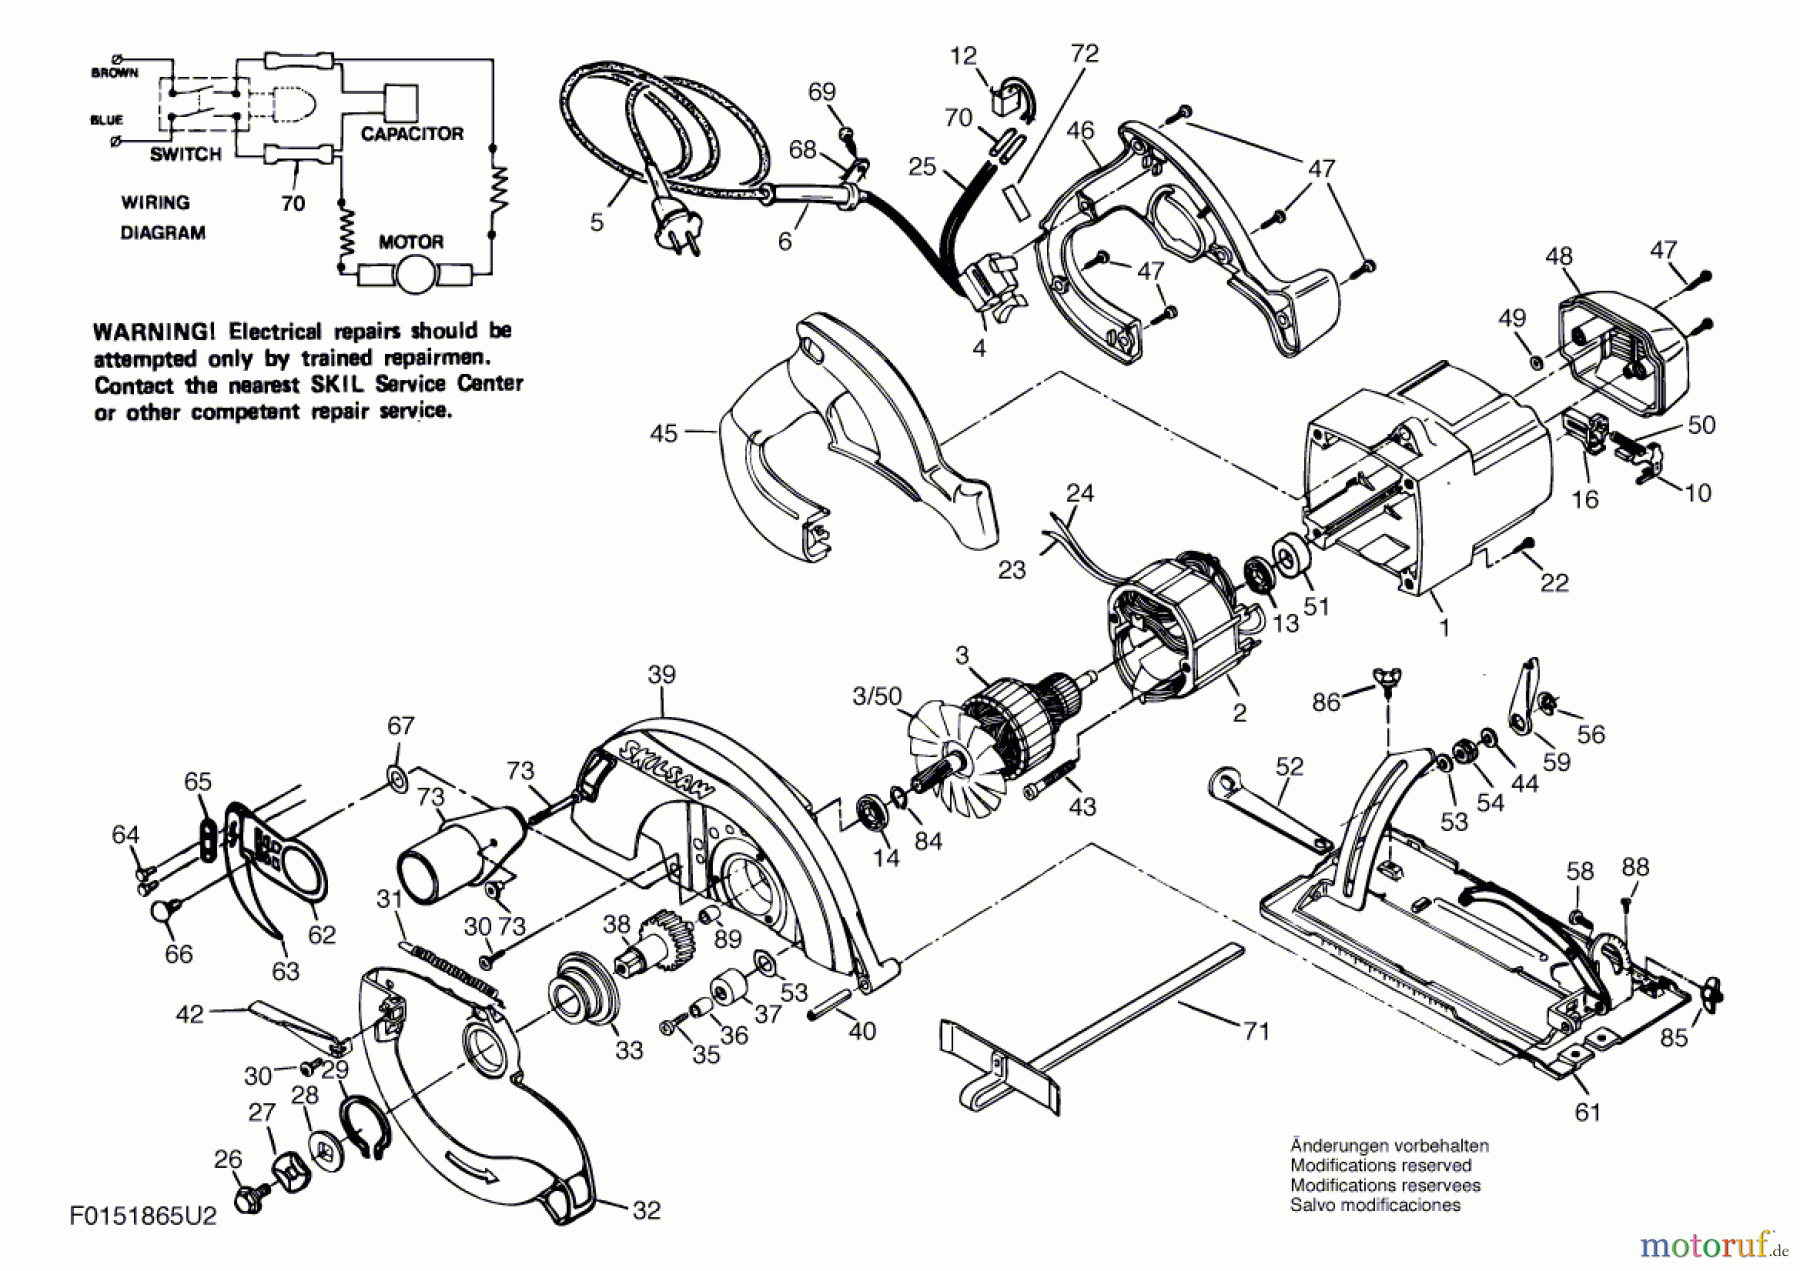  Bosch Werkzeug Handkreissäge 1865U2 Seite 1